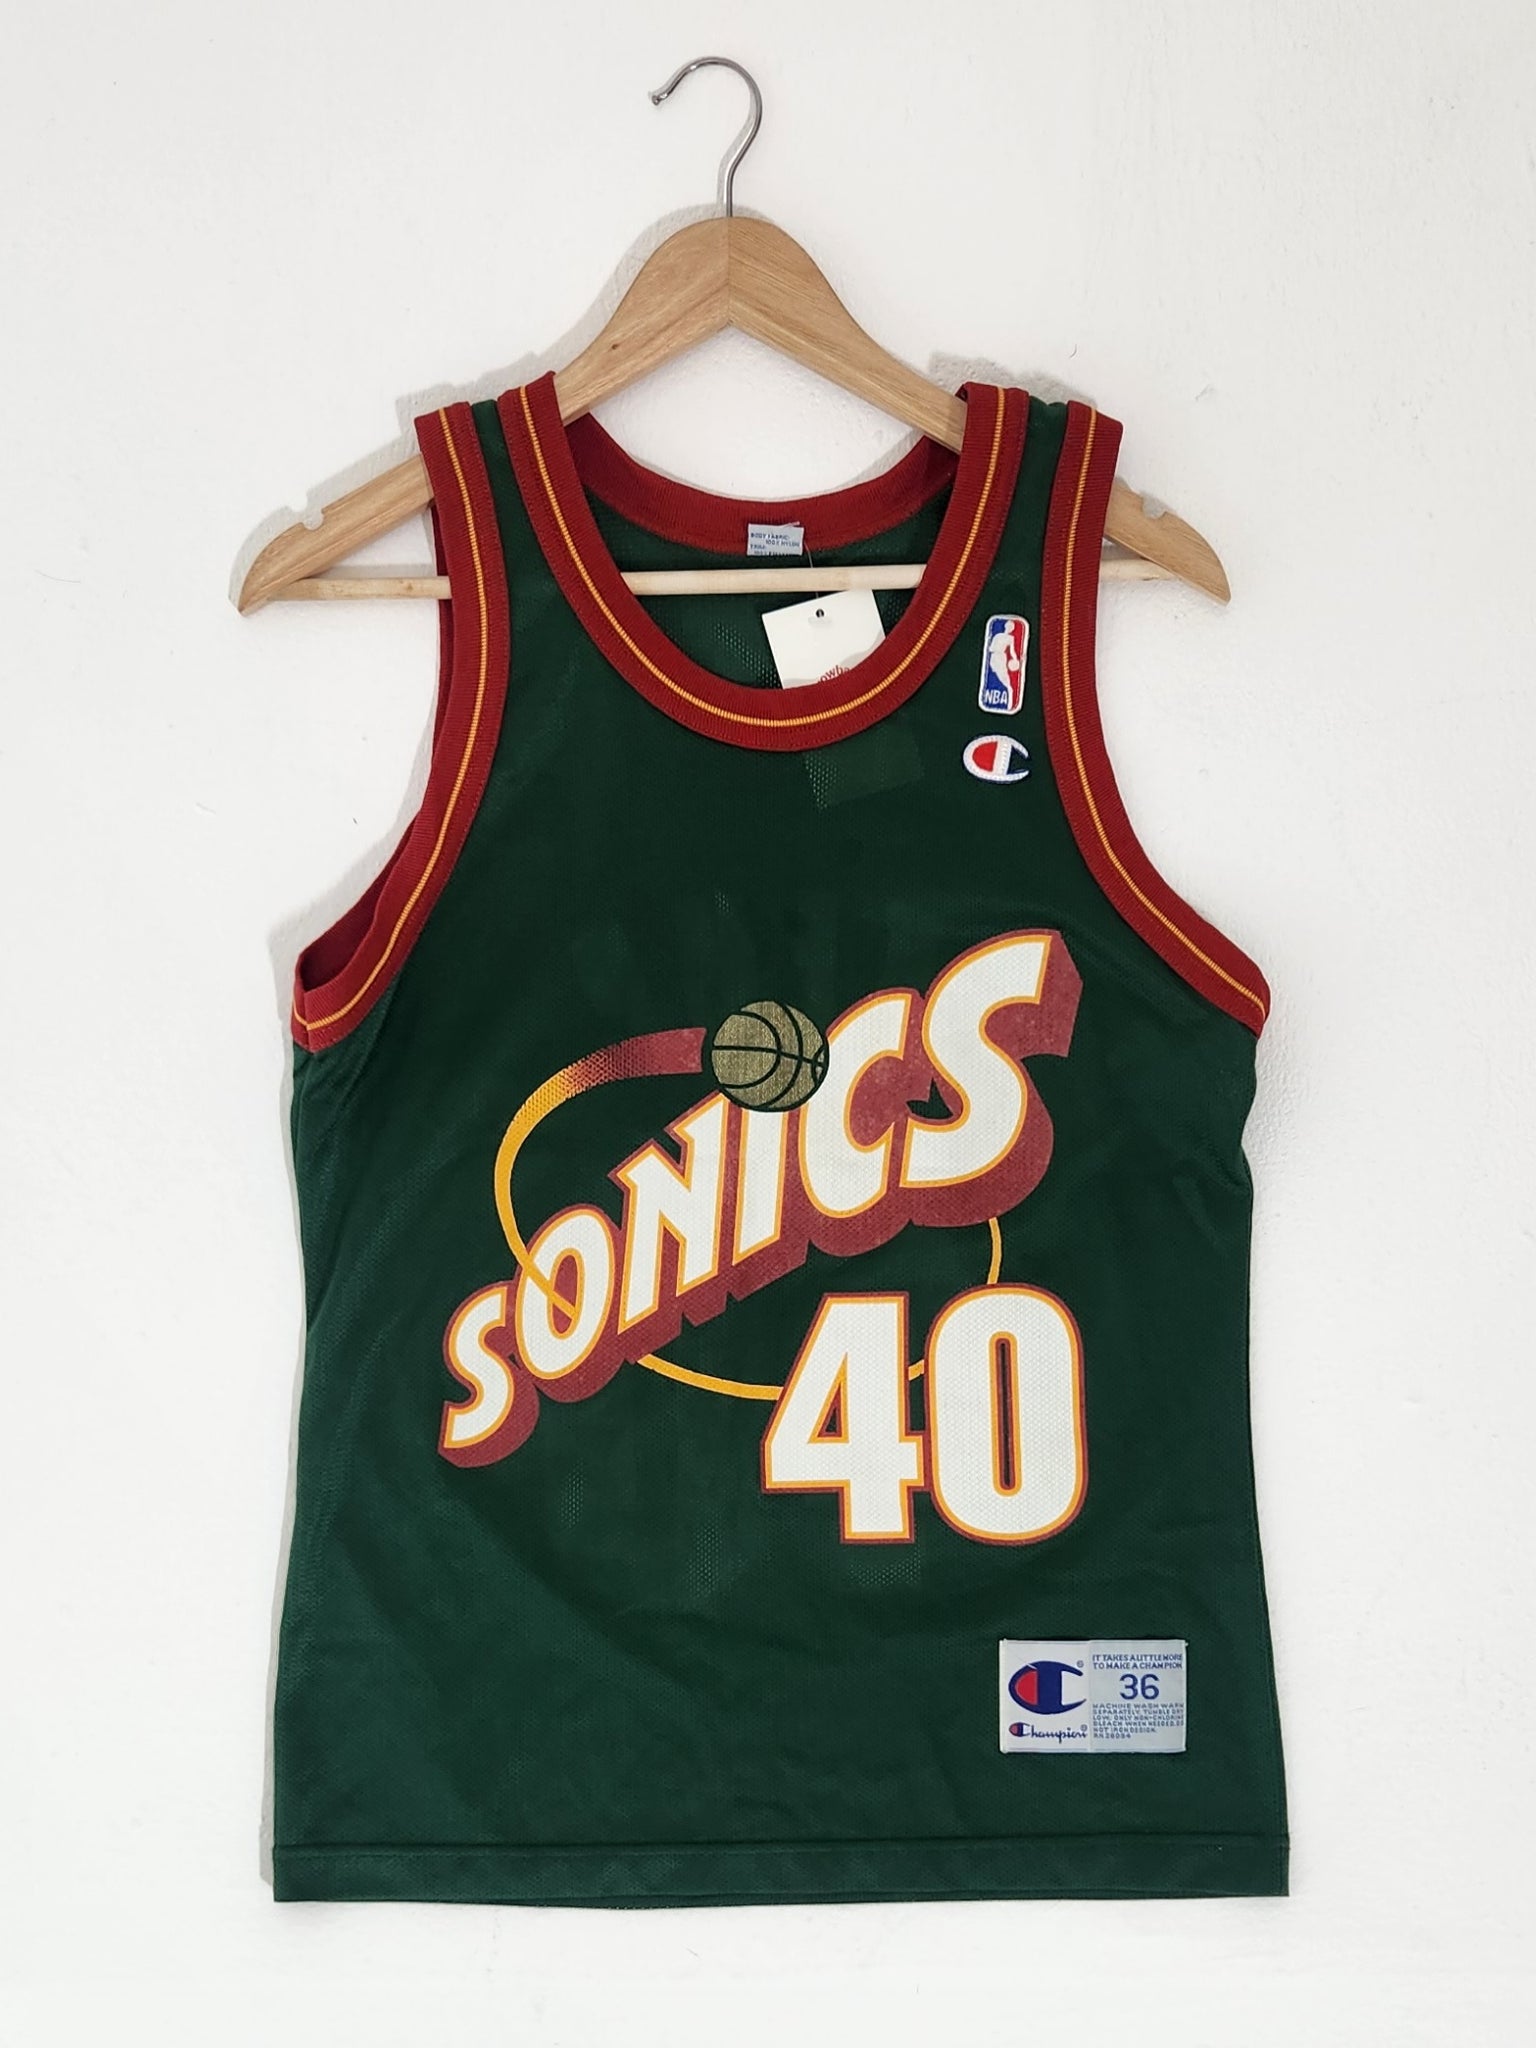 Vintage Pro Basketball Apparel, Jerseys, Fan Shop